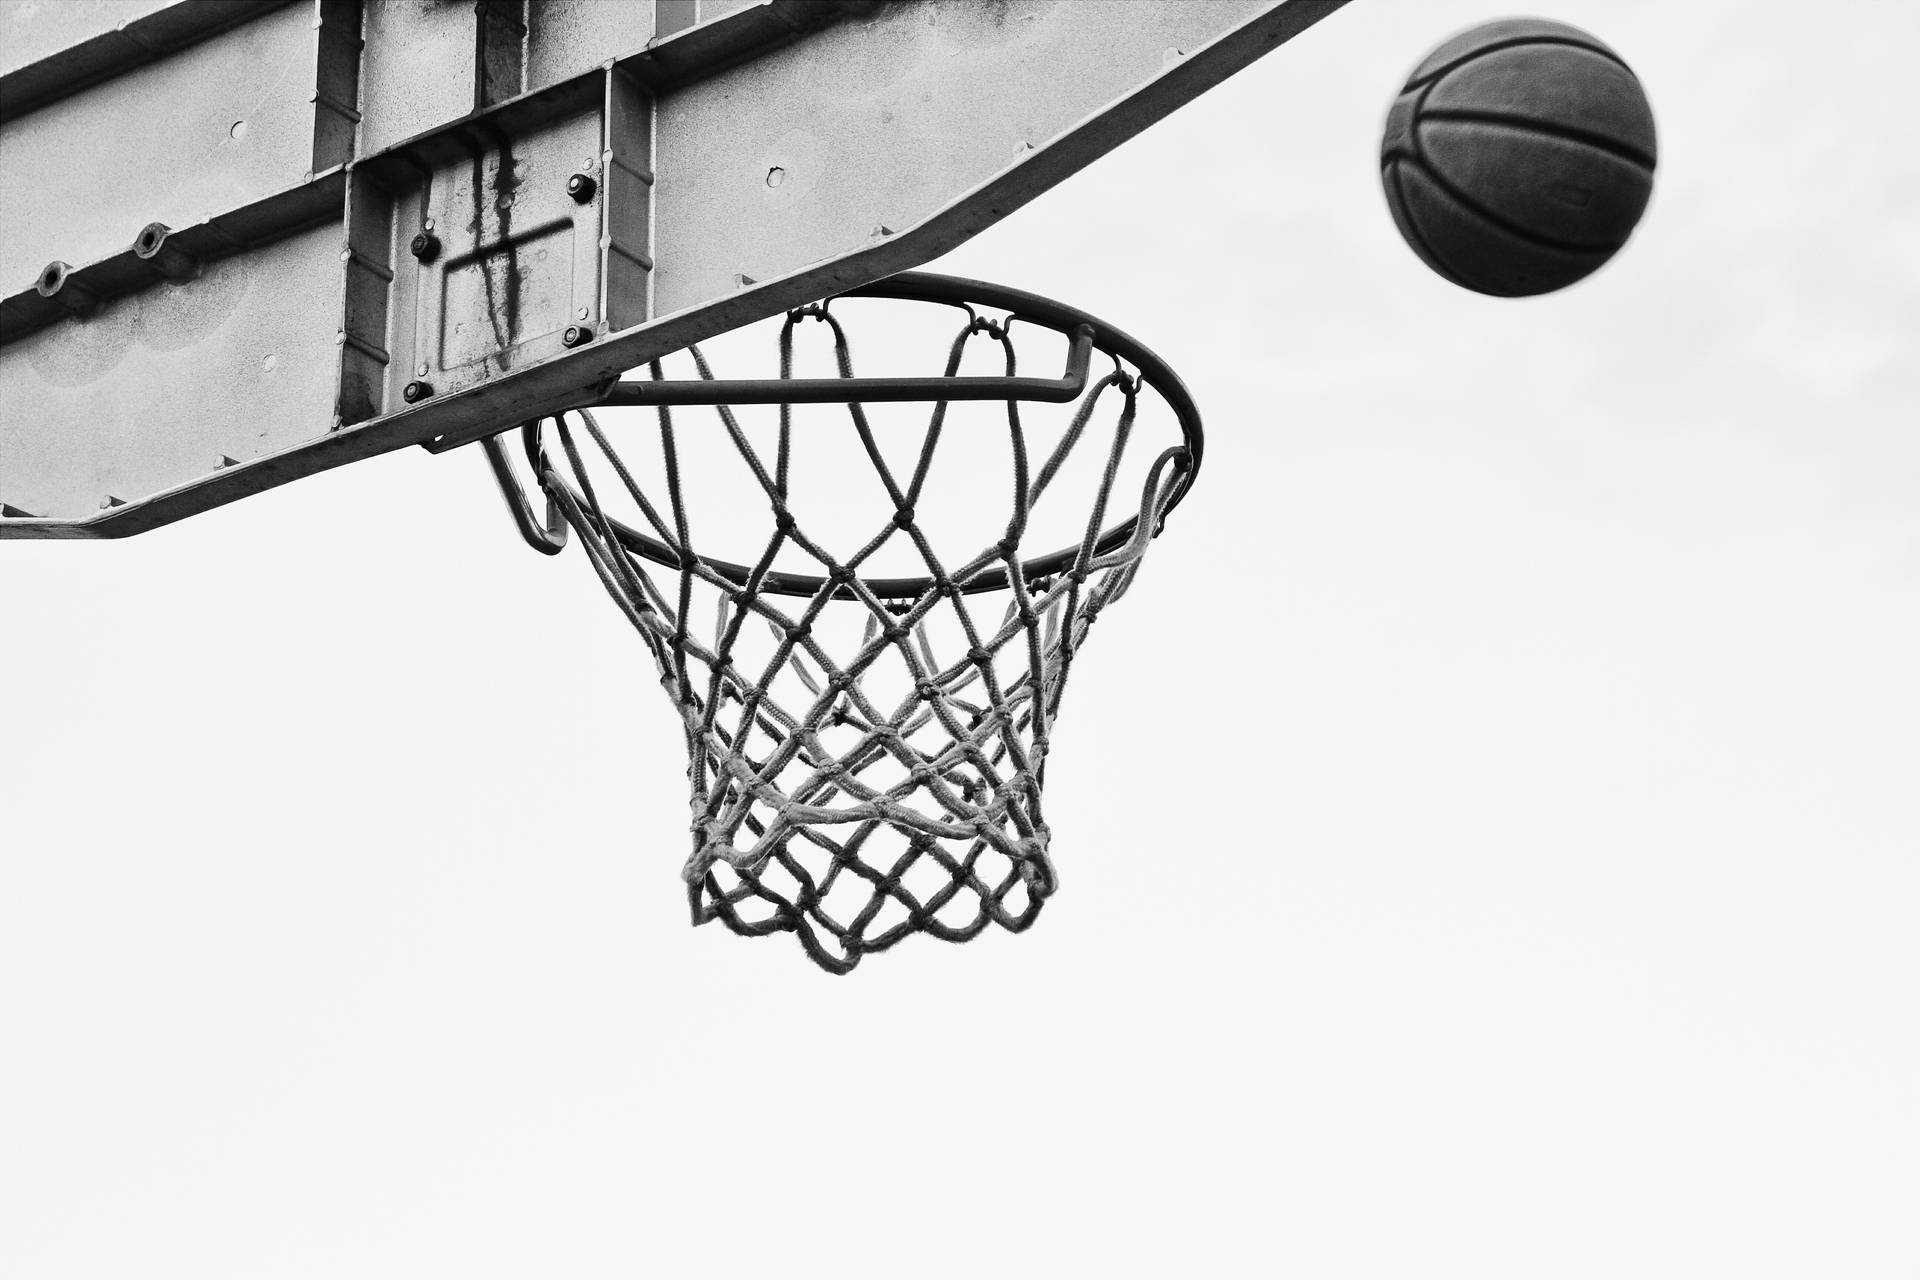 Gray Ball Over Basketball Net Ring Background